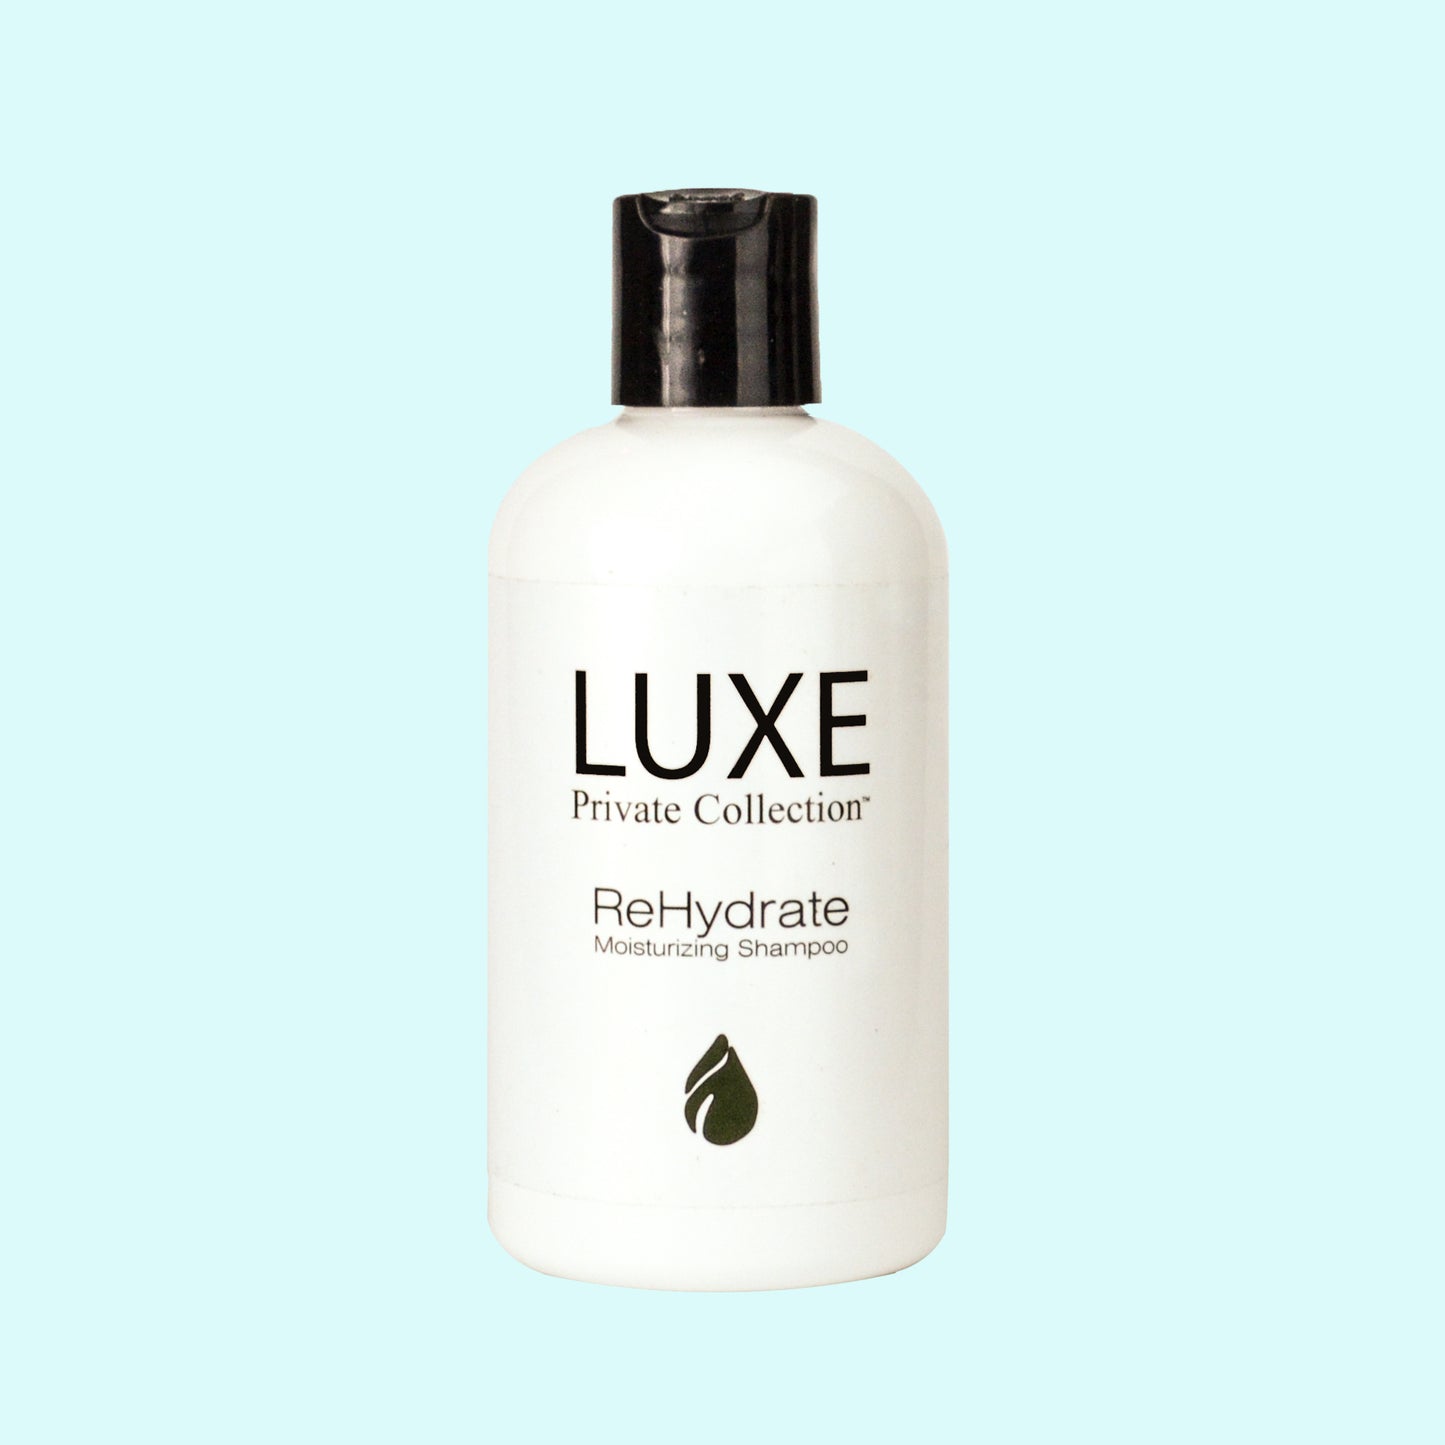 LUXE ReHydrate Moisturizing Shampoo